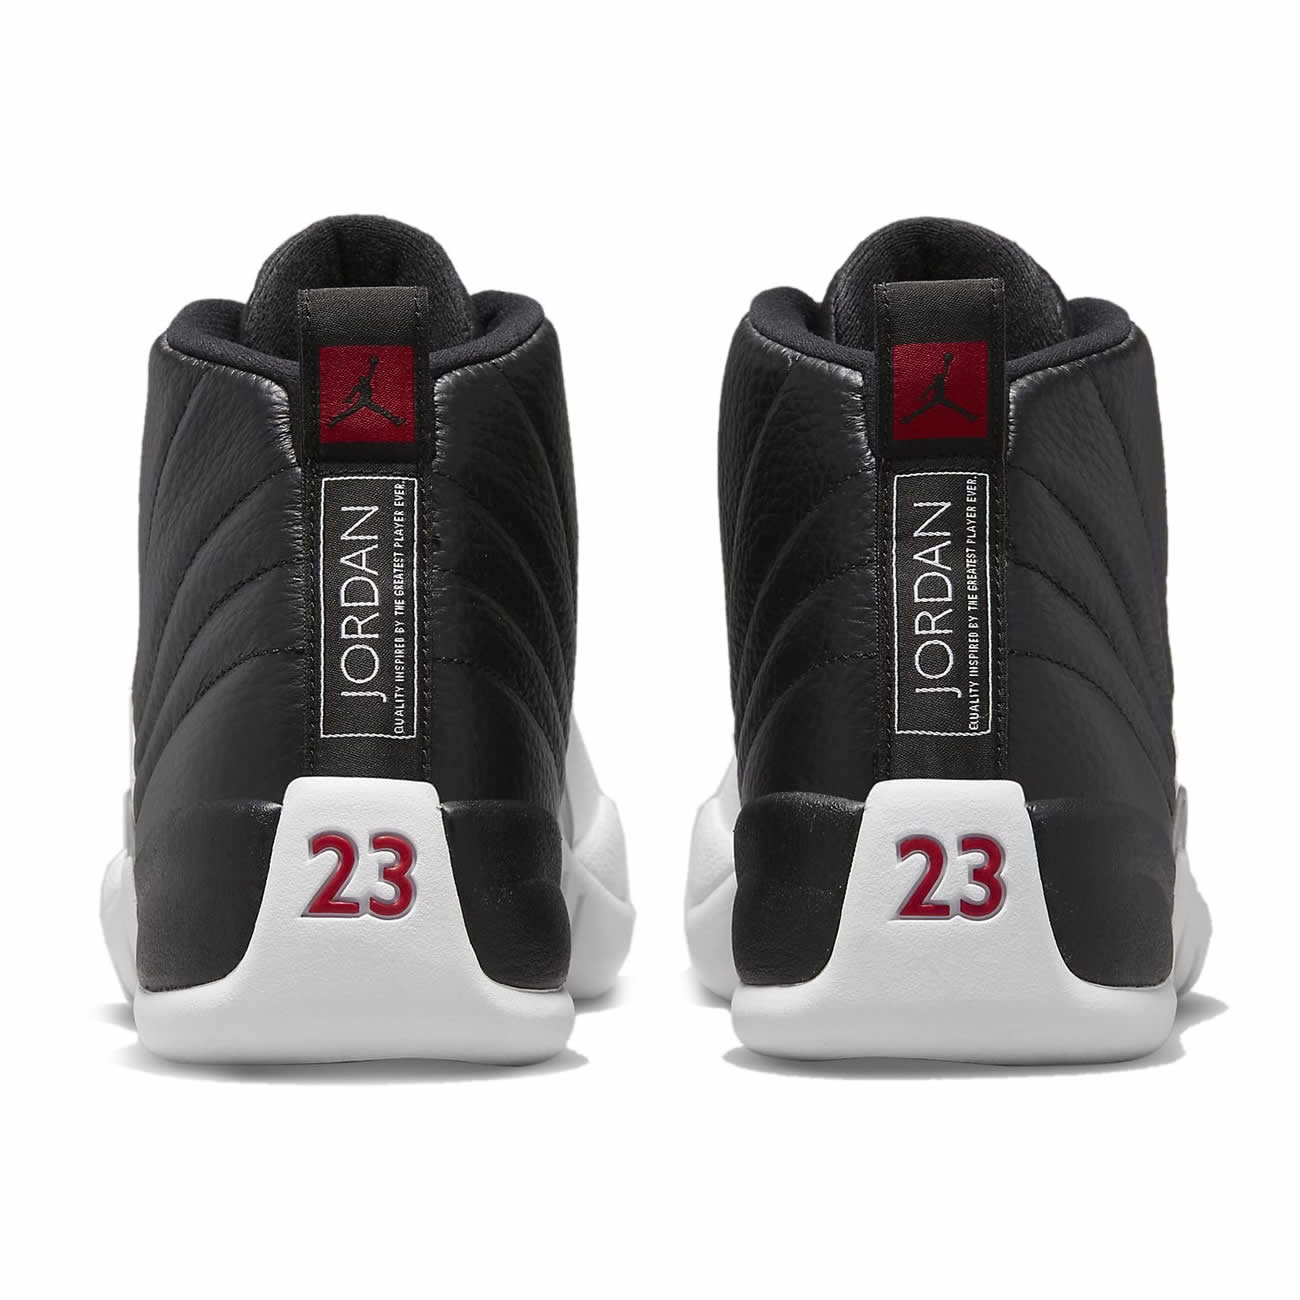 Air Jordan 12 Playoffs 2022 New Release Date Ct8013 006 (5) - newkick.org